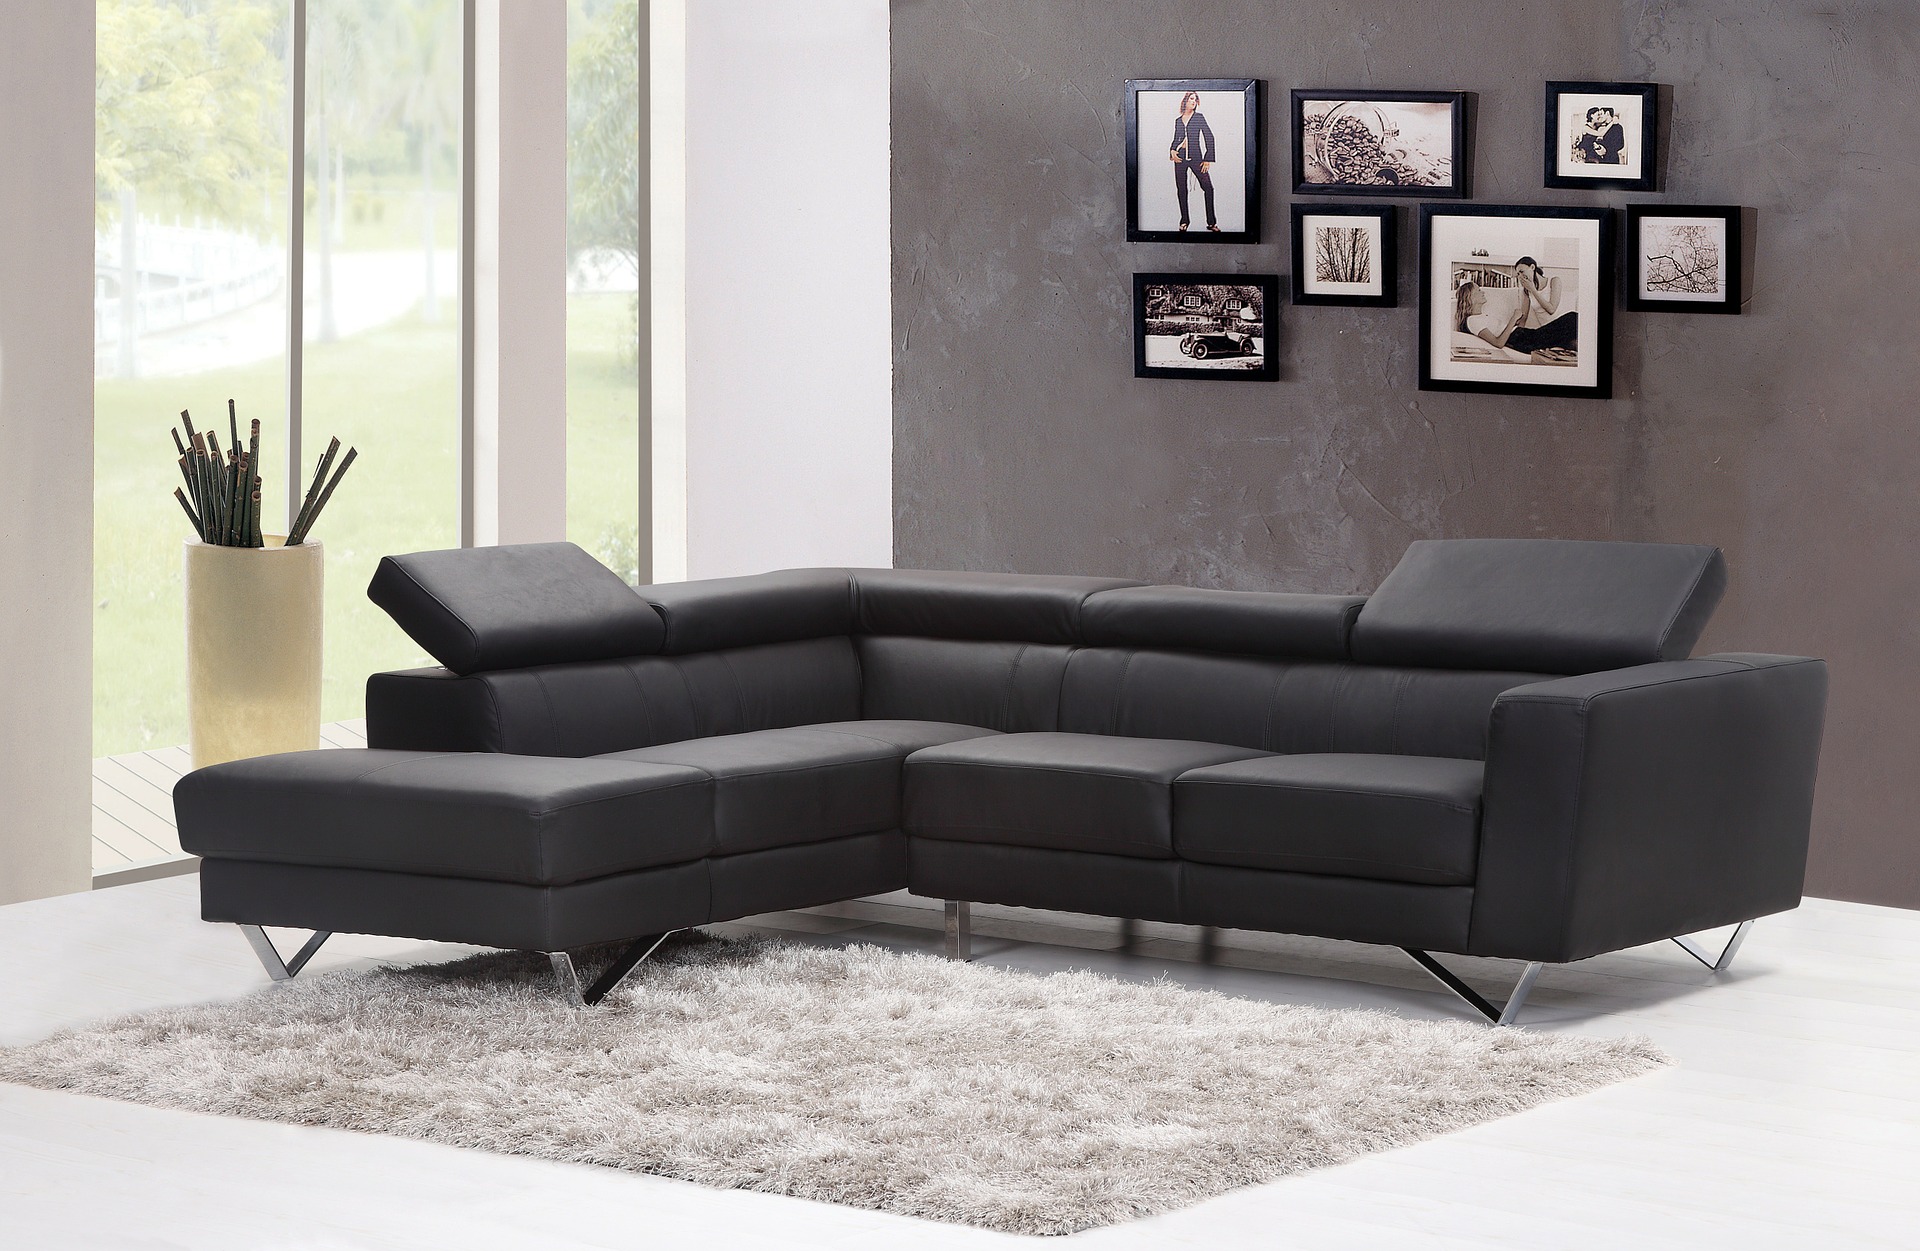 10个轻奢舒适的沙发区设计方案 打造舒适交流区间